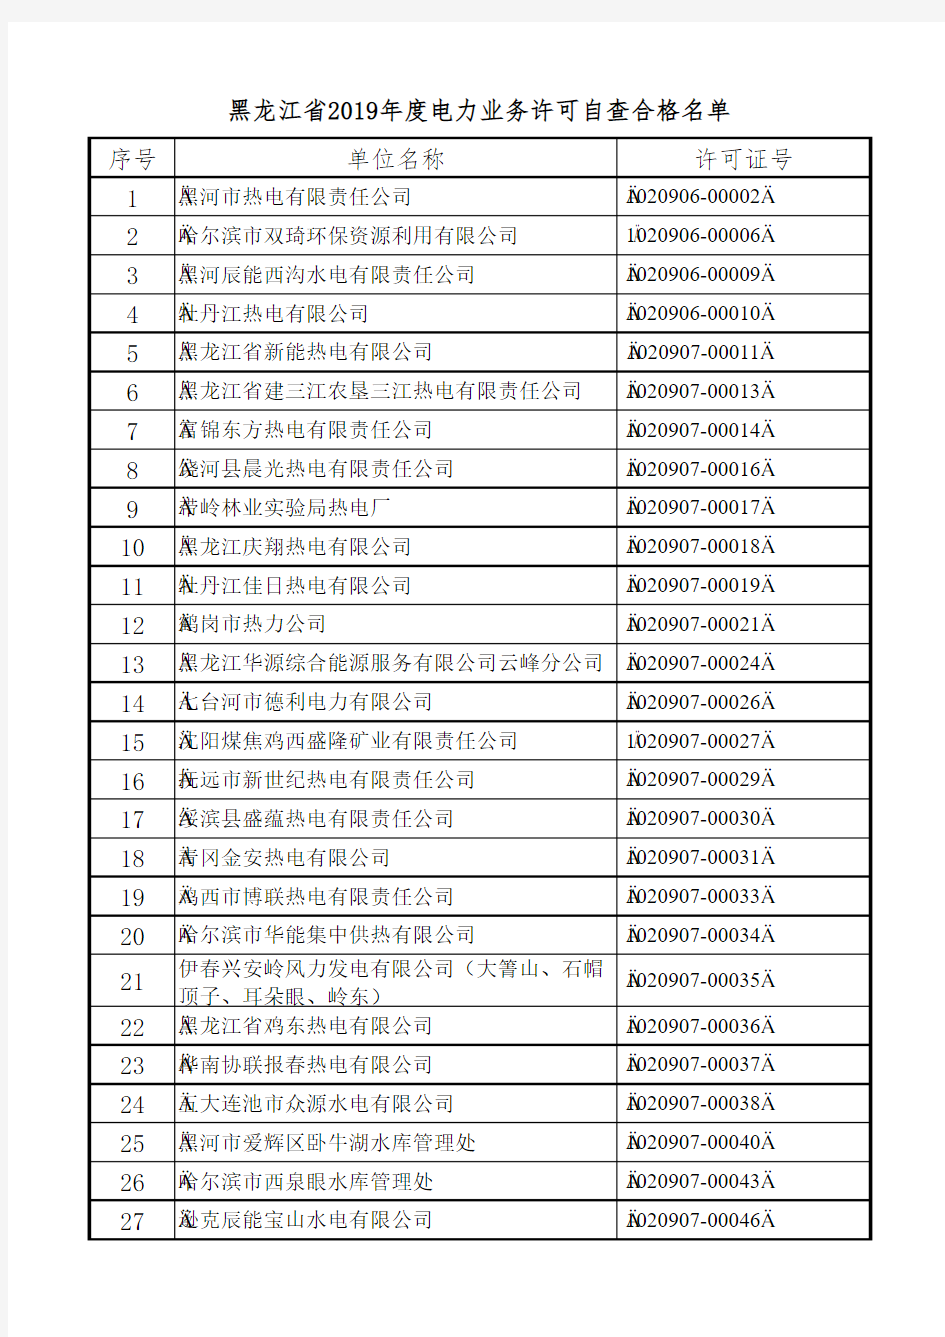 黑龙江省2019年度电力业务许可自查合格名单